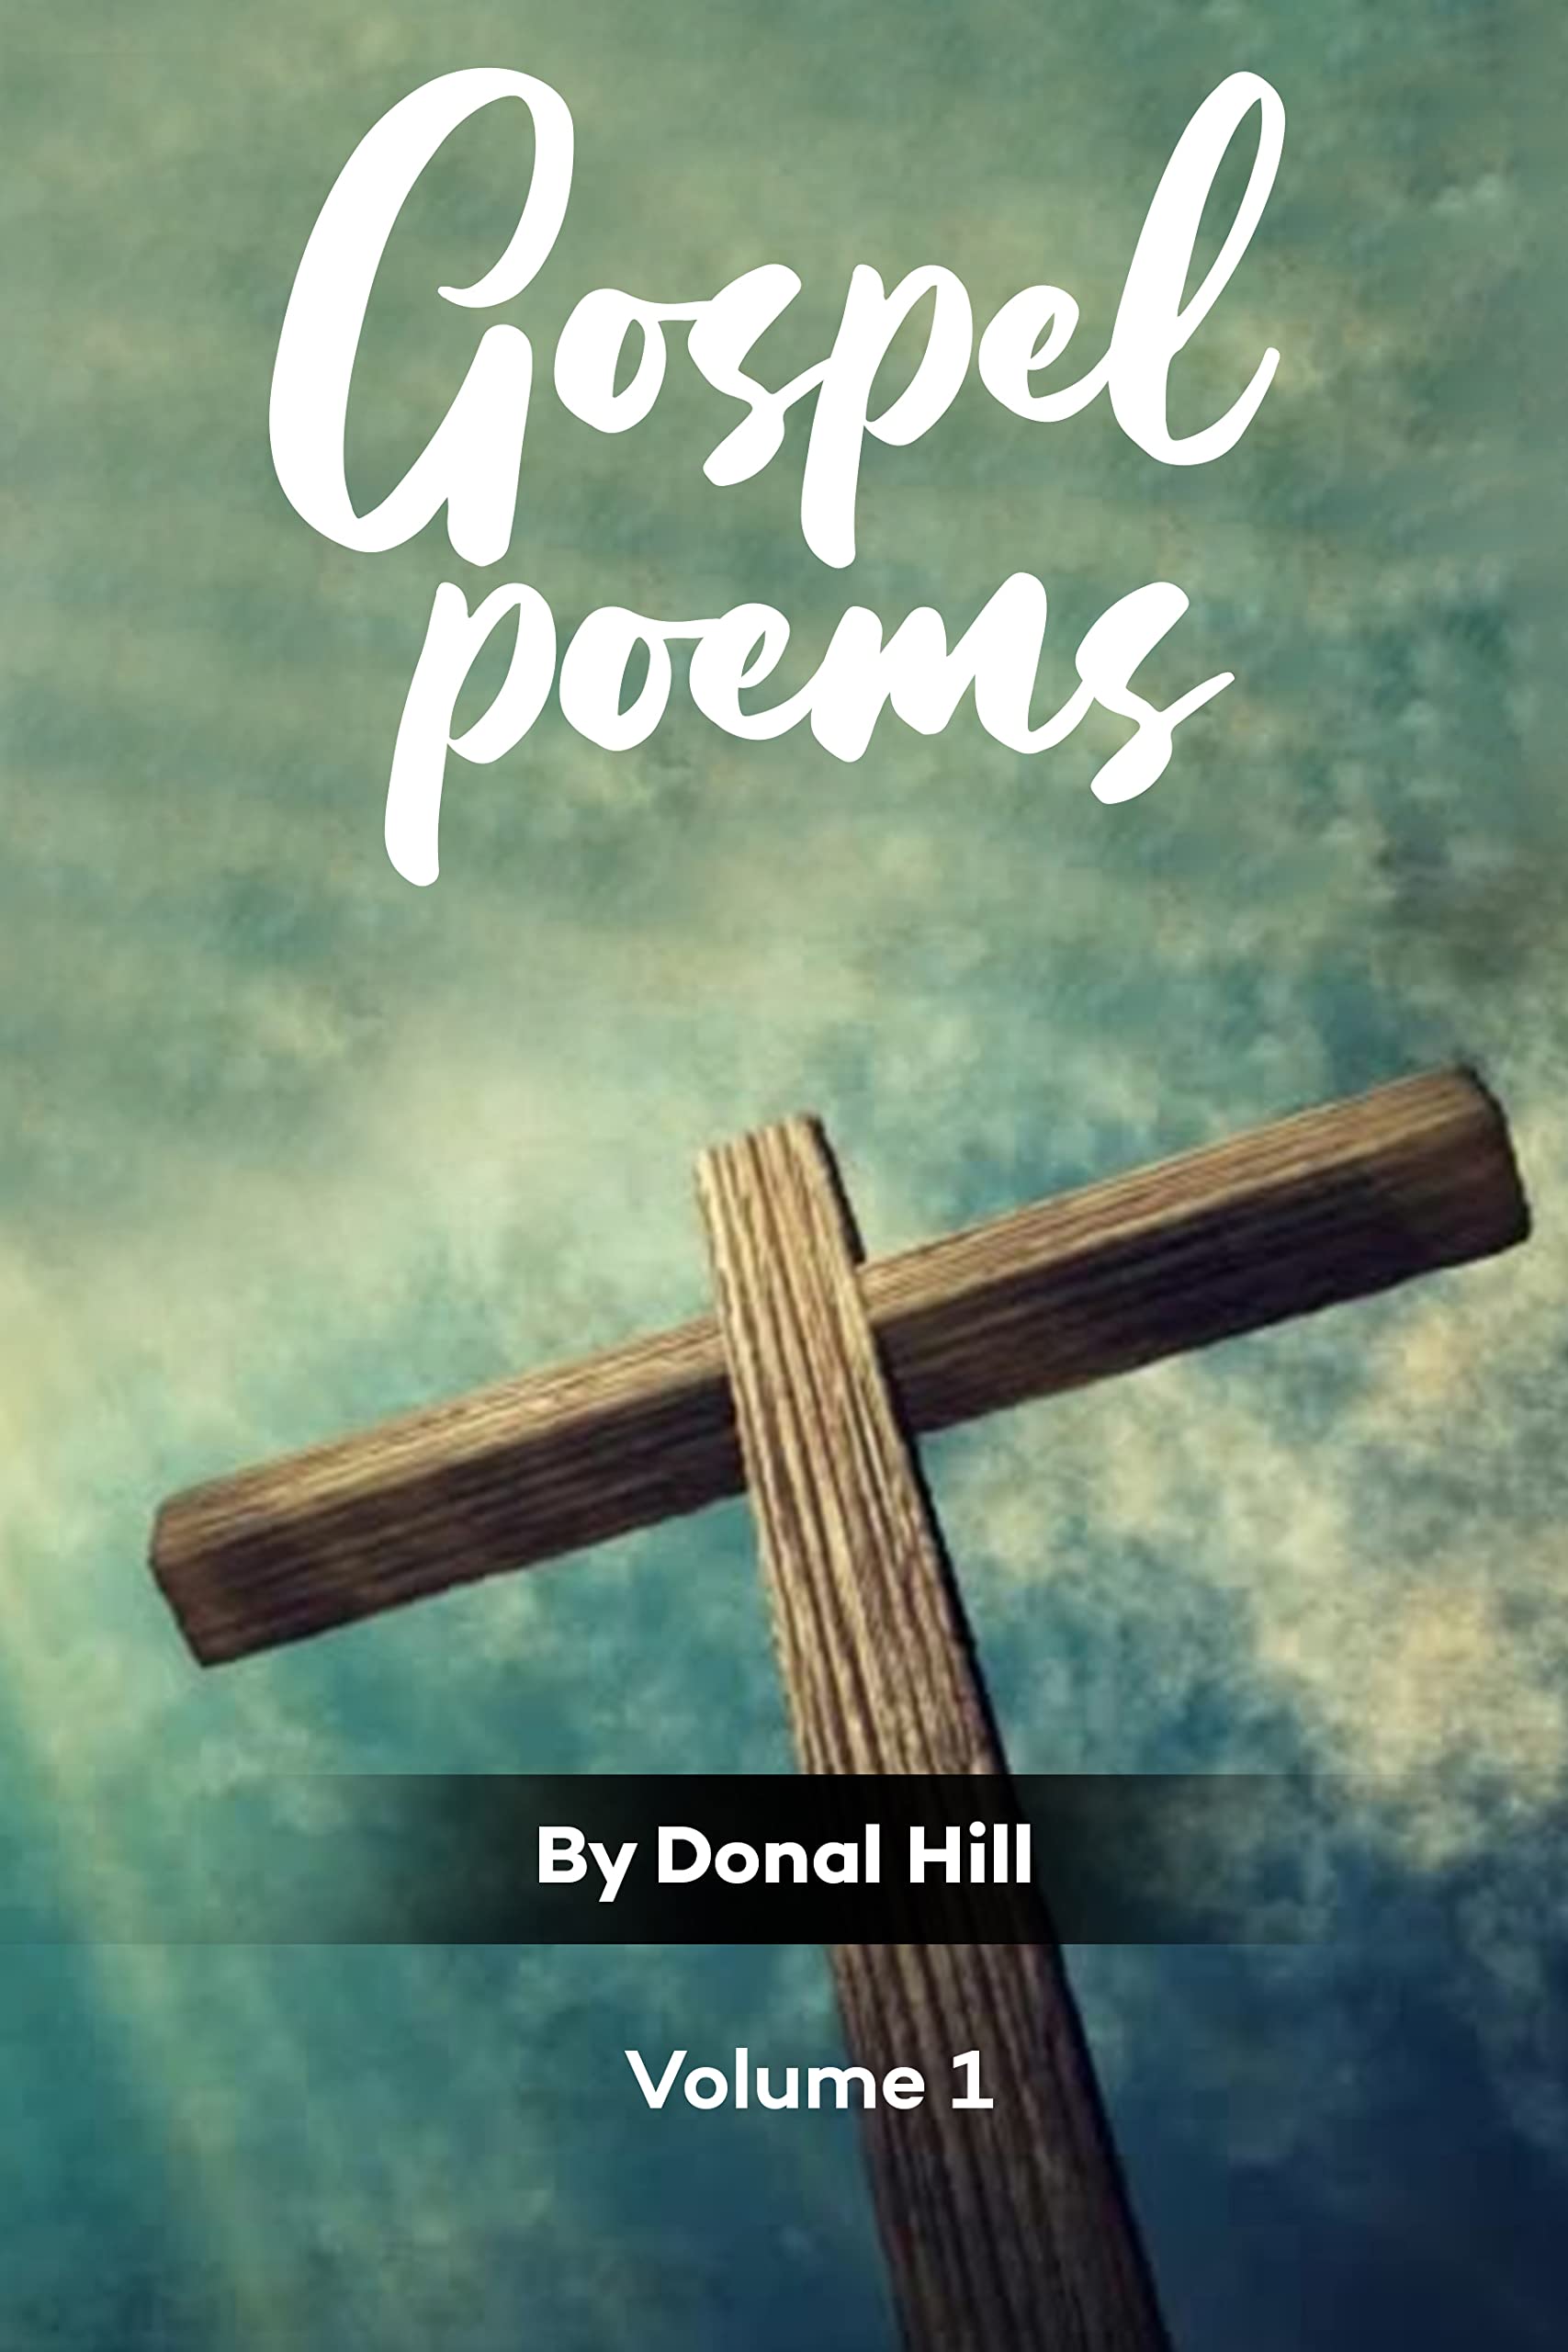 Gospel Poems